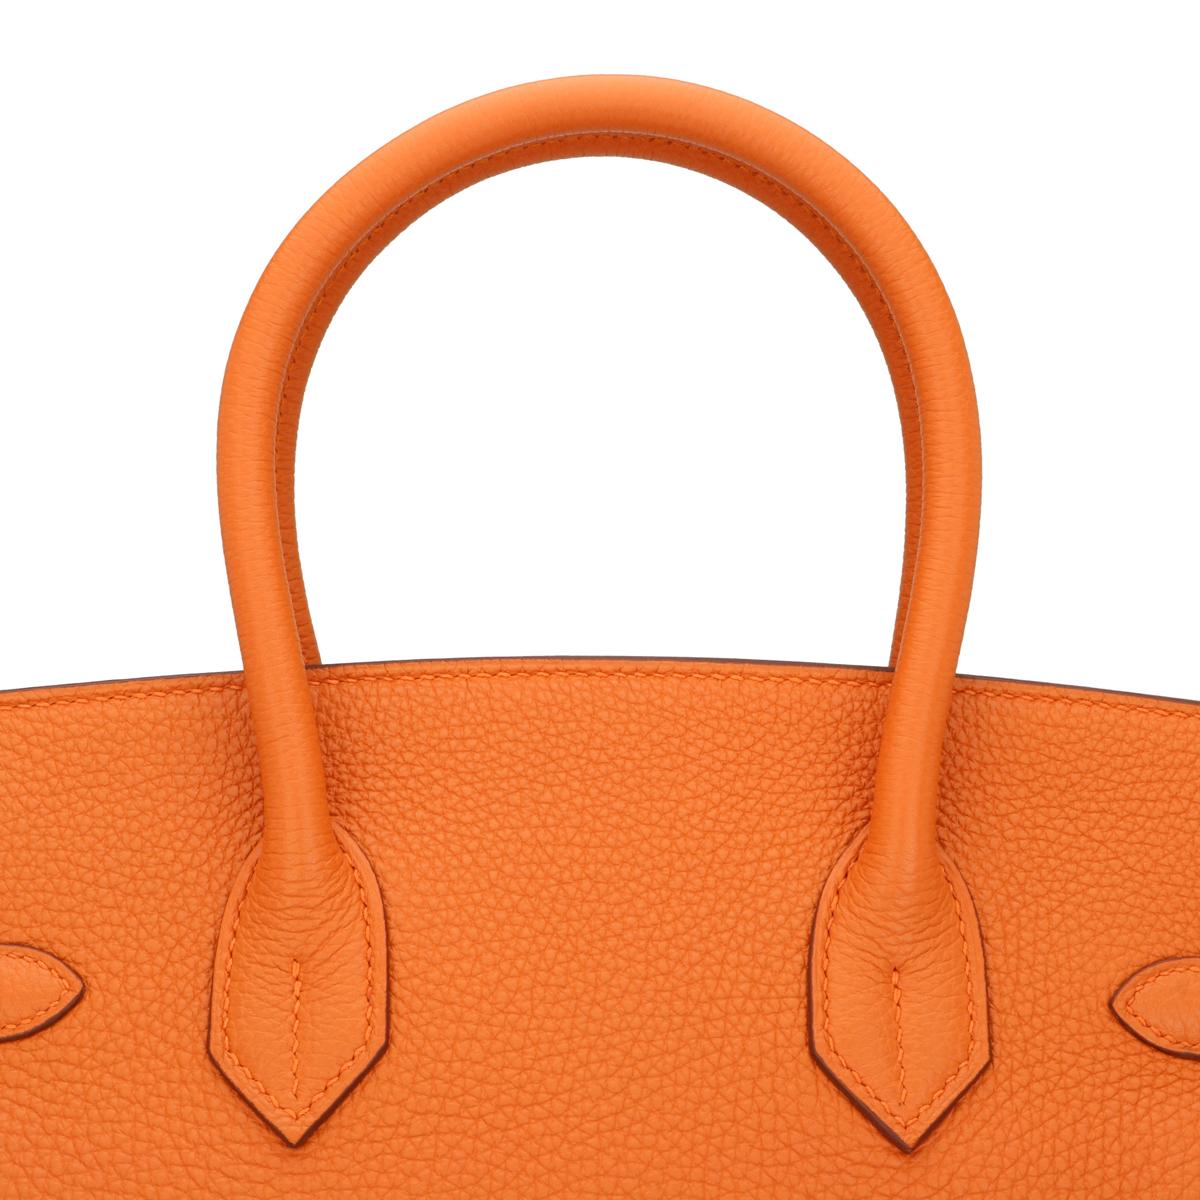 Hermès Birkin Bag 30cm Orange Togo Leather with Palladium Hardware Stamp M 2009 9